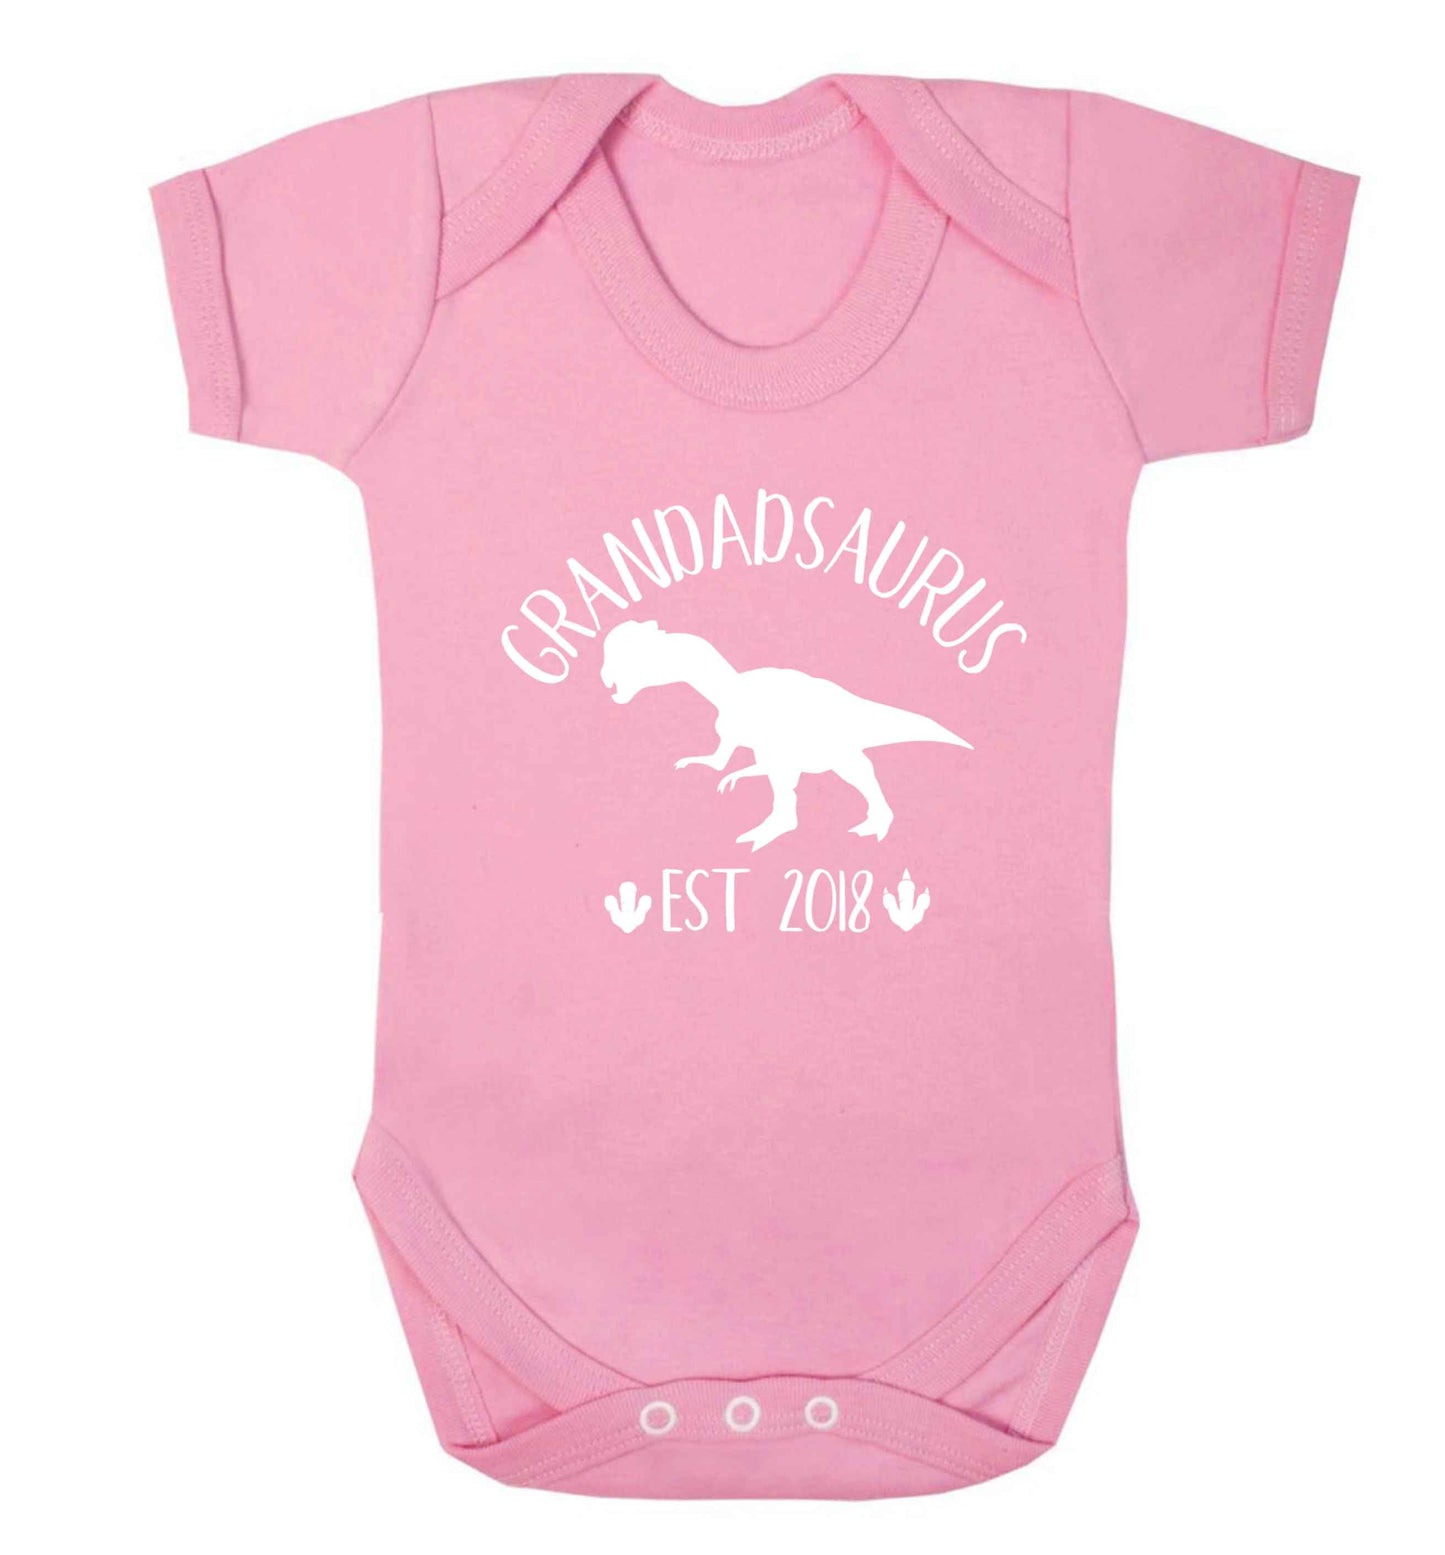 Personalised grandadsaurus since (custom date) Baby Vest pale pink 18-24 months